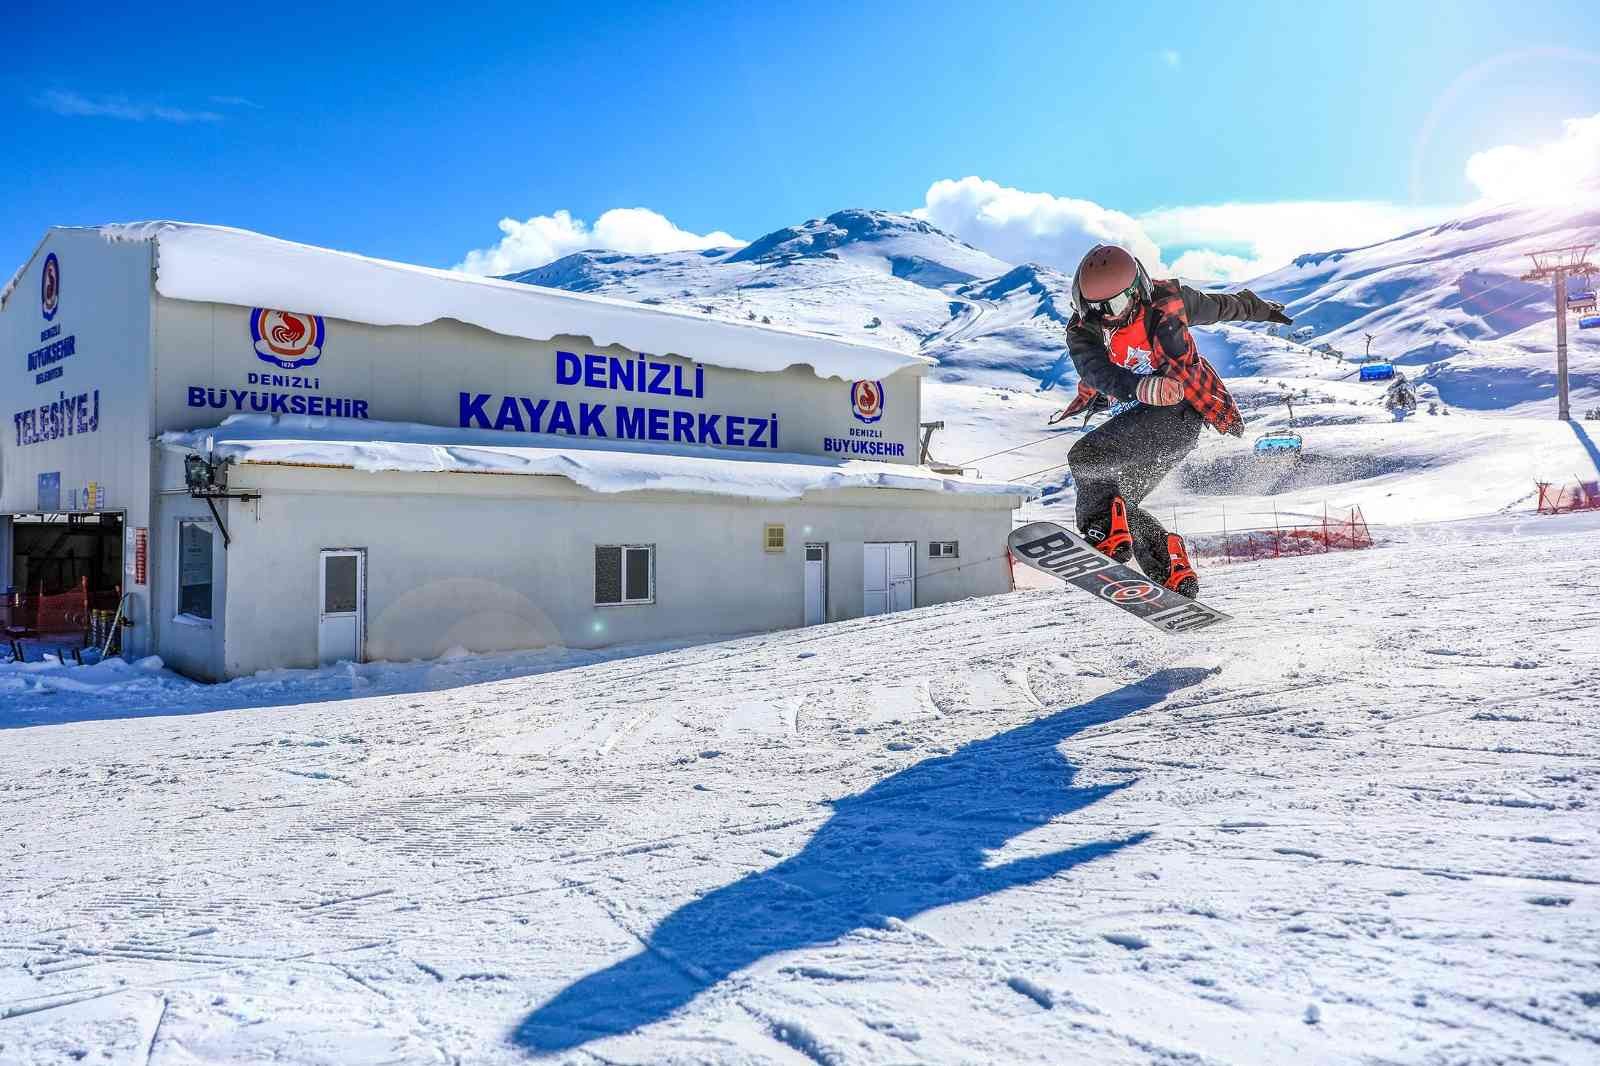 Ege’nin en büyük kayak merkezi 2022 sezonunu açıyor #denizli